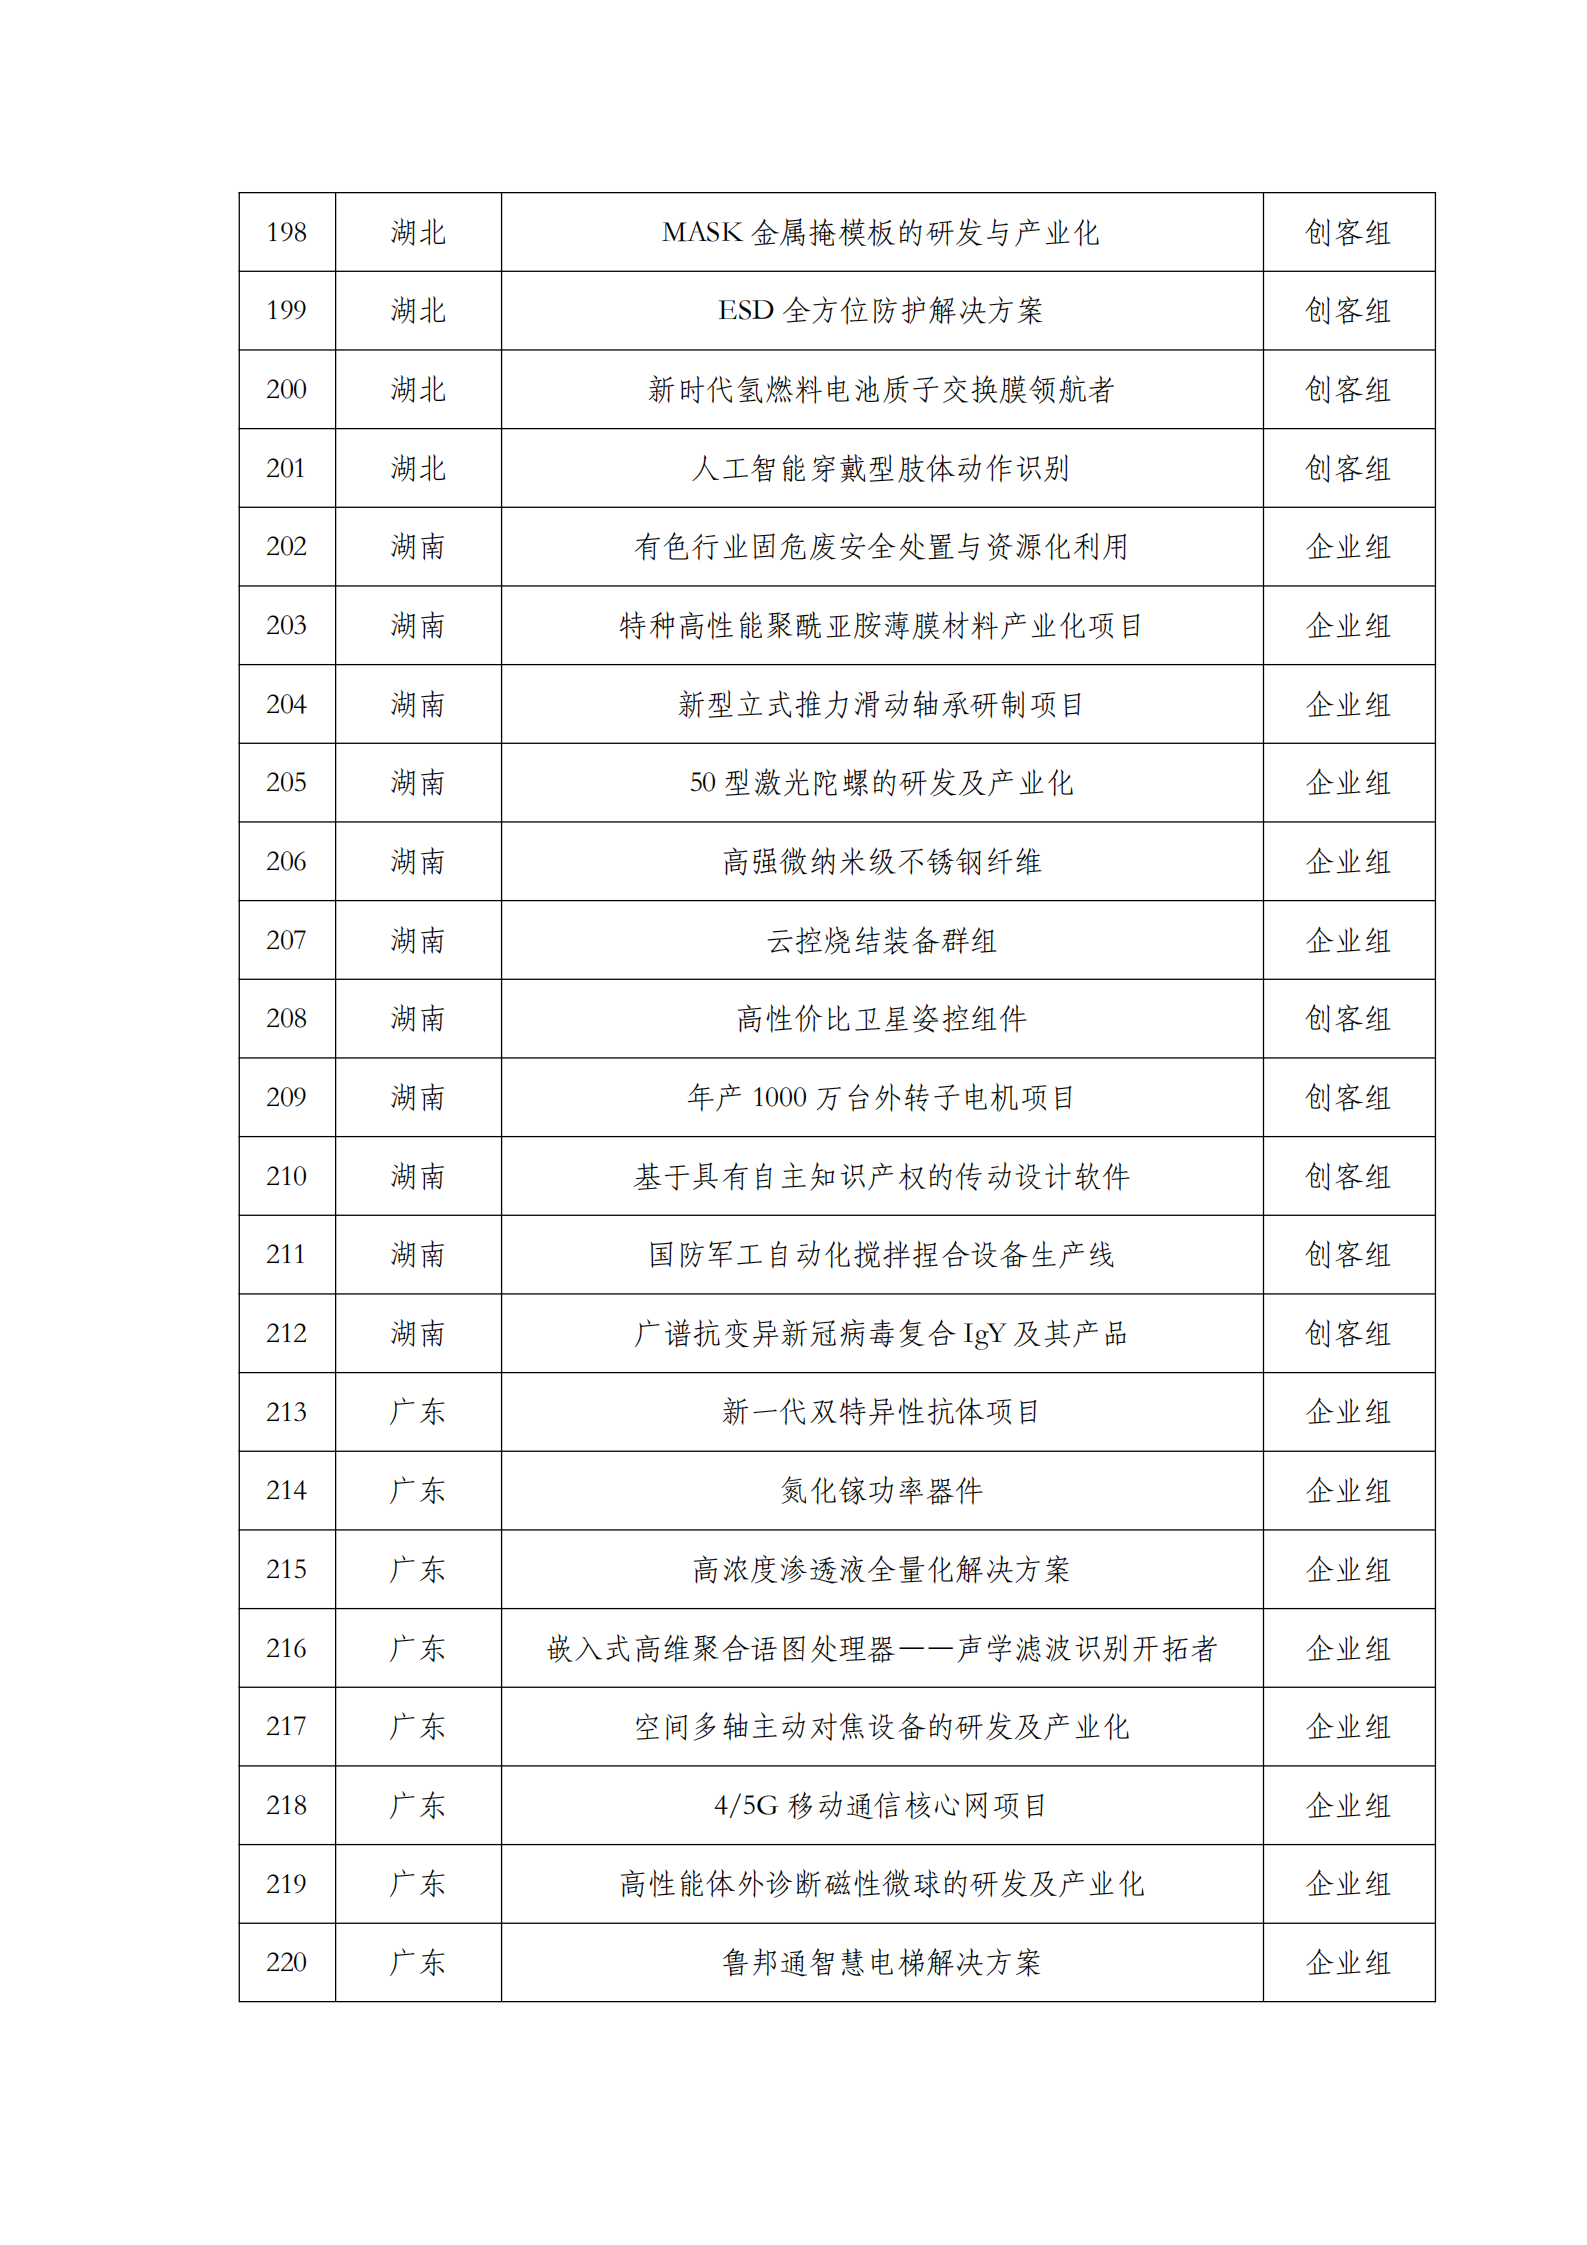 第六届“创客中国”中小企业创新创业大赛500强公示名单_09.png